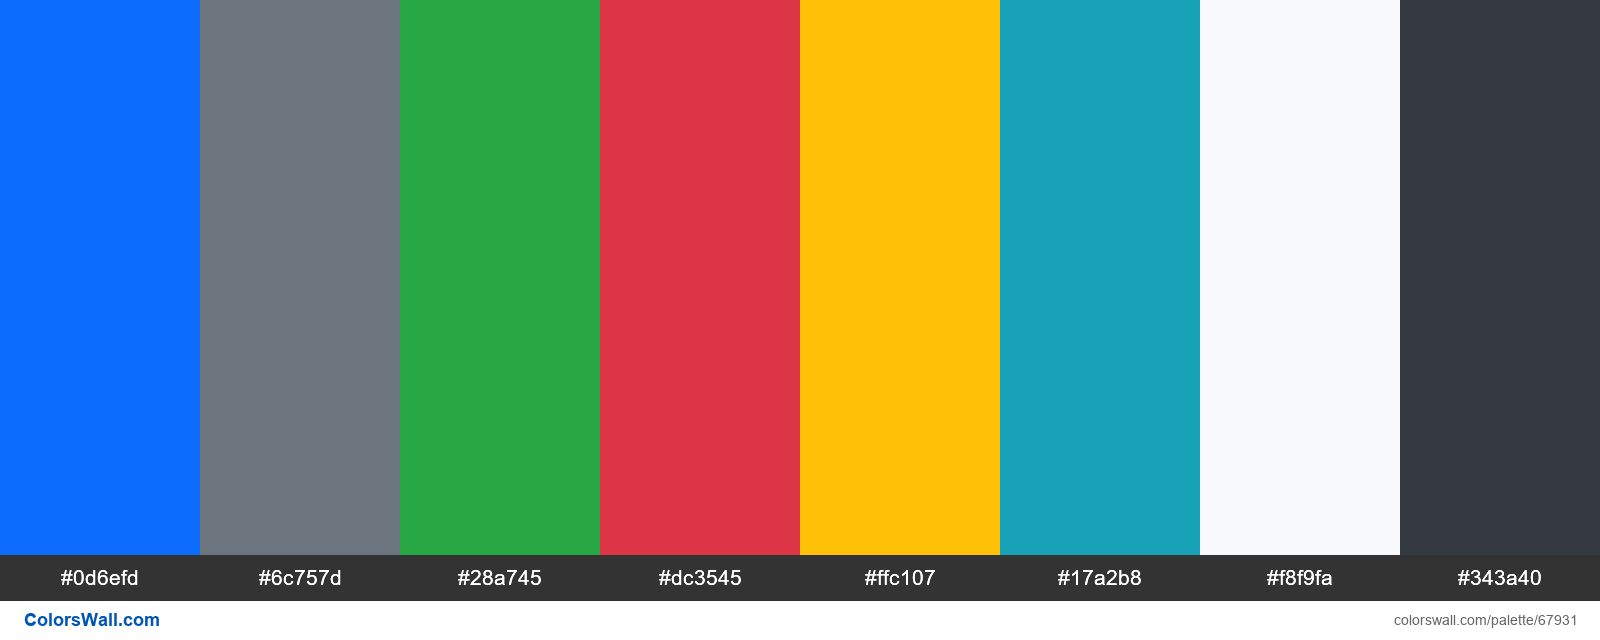 Màu sắc Bootstrap 5 - ColorsWall là một bộ sưu tập vô cùng đa dạng và dễ áp dụng cho những người thích tạo ra giao diện web đẹp mắt. Với sự kết hợp độc đáo của các màu sắc, bạn chắc chắn sẽ tìm được màu sắc phù hợp nhất cho dự án của mình.